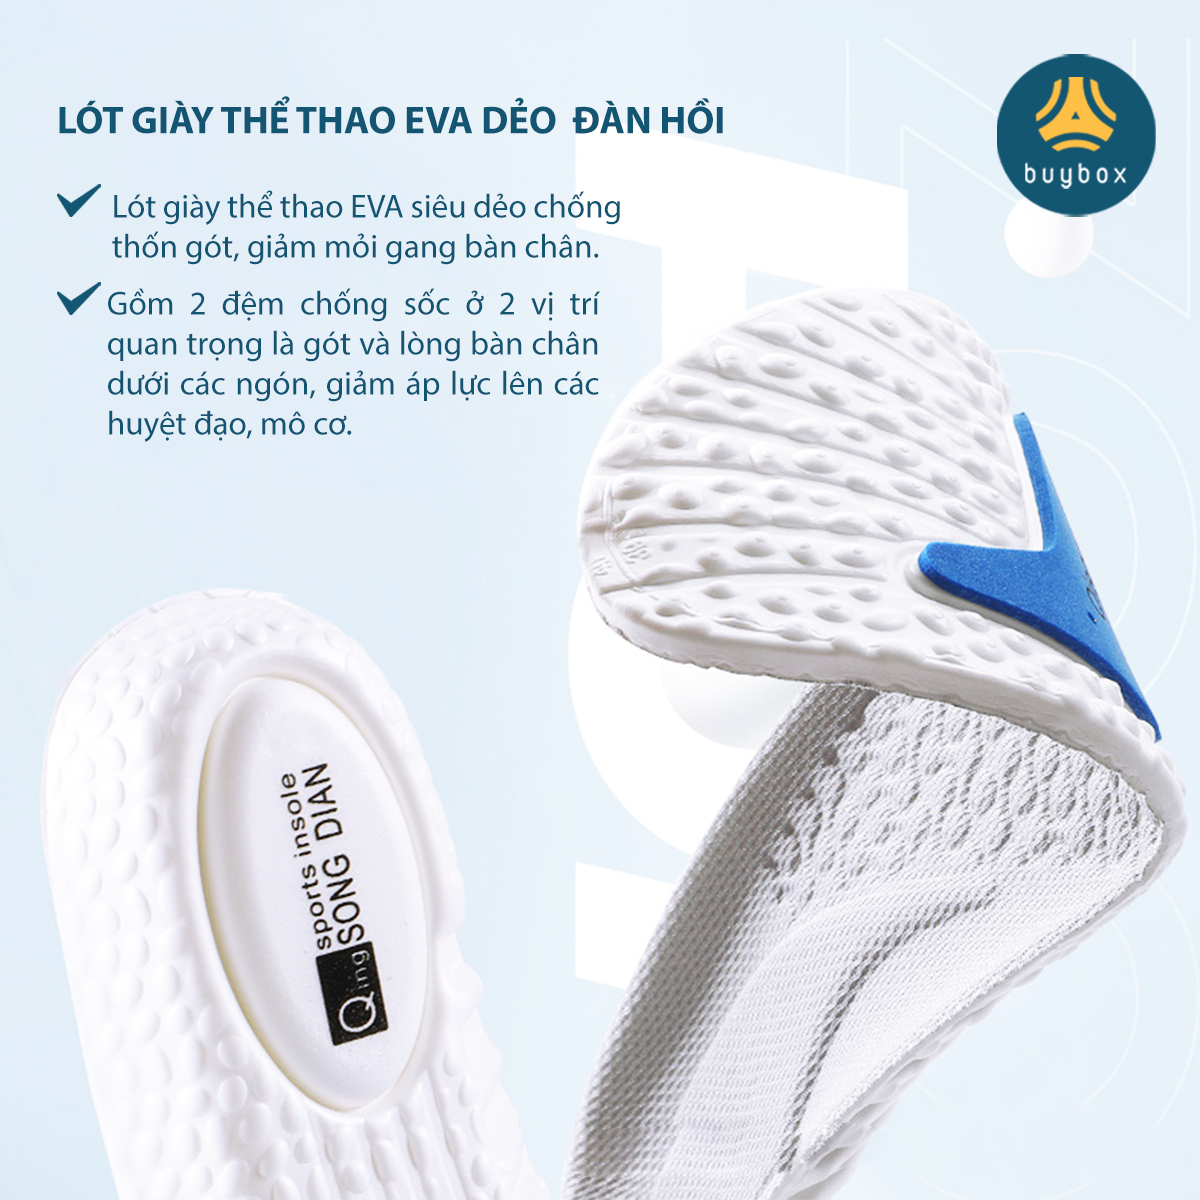 Lót giày nam nữ êm chân chất liệu vải mesh cấu trúc vòm nâng đỡ lòng bàn chân, kết hợp ốp PU chống thốn và bảo vệ gót chân - buybox - BBPK359